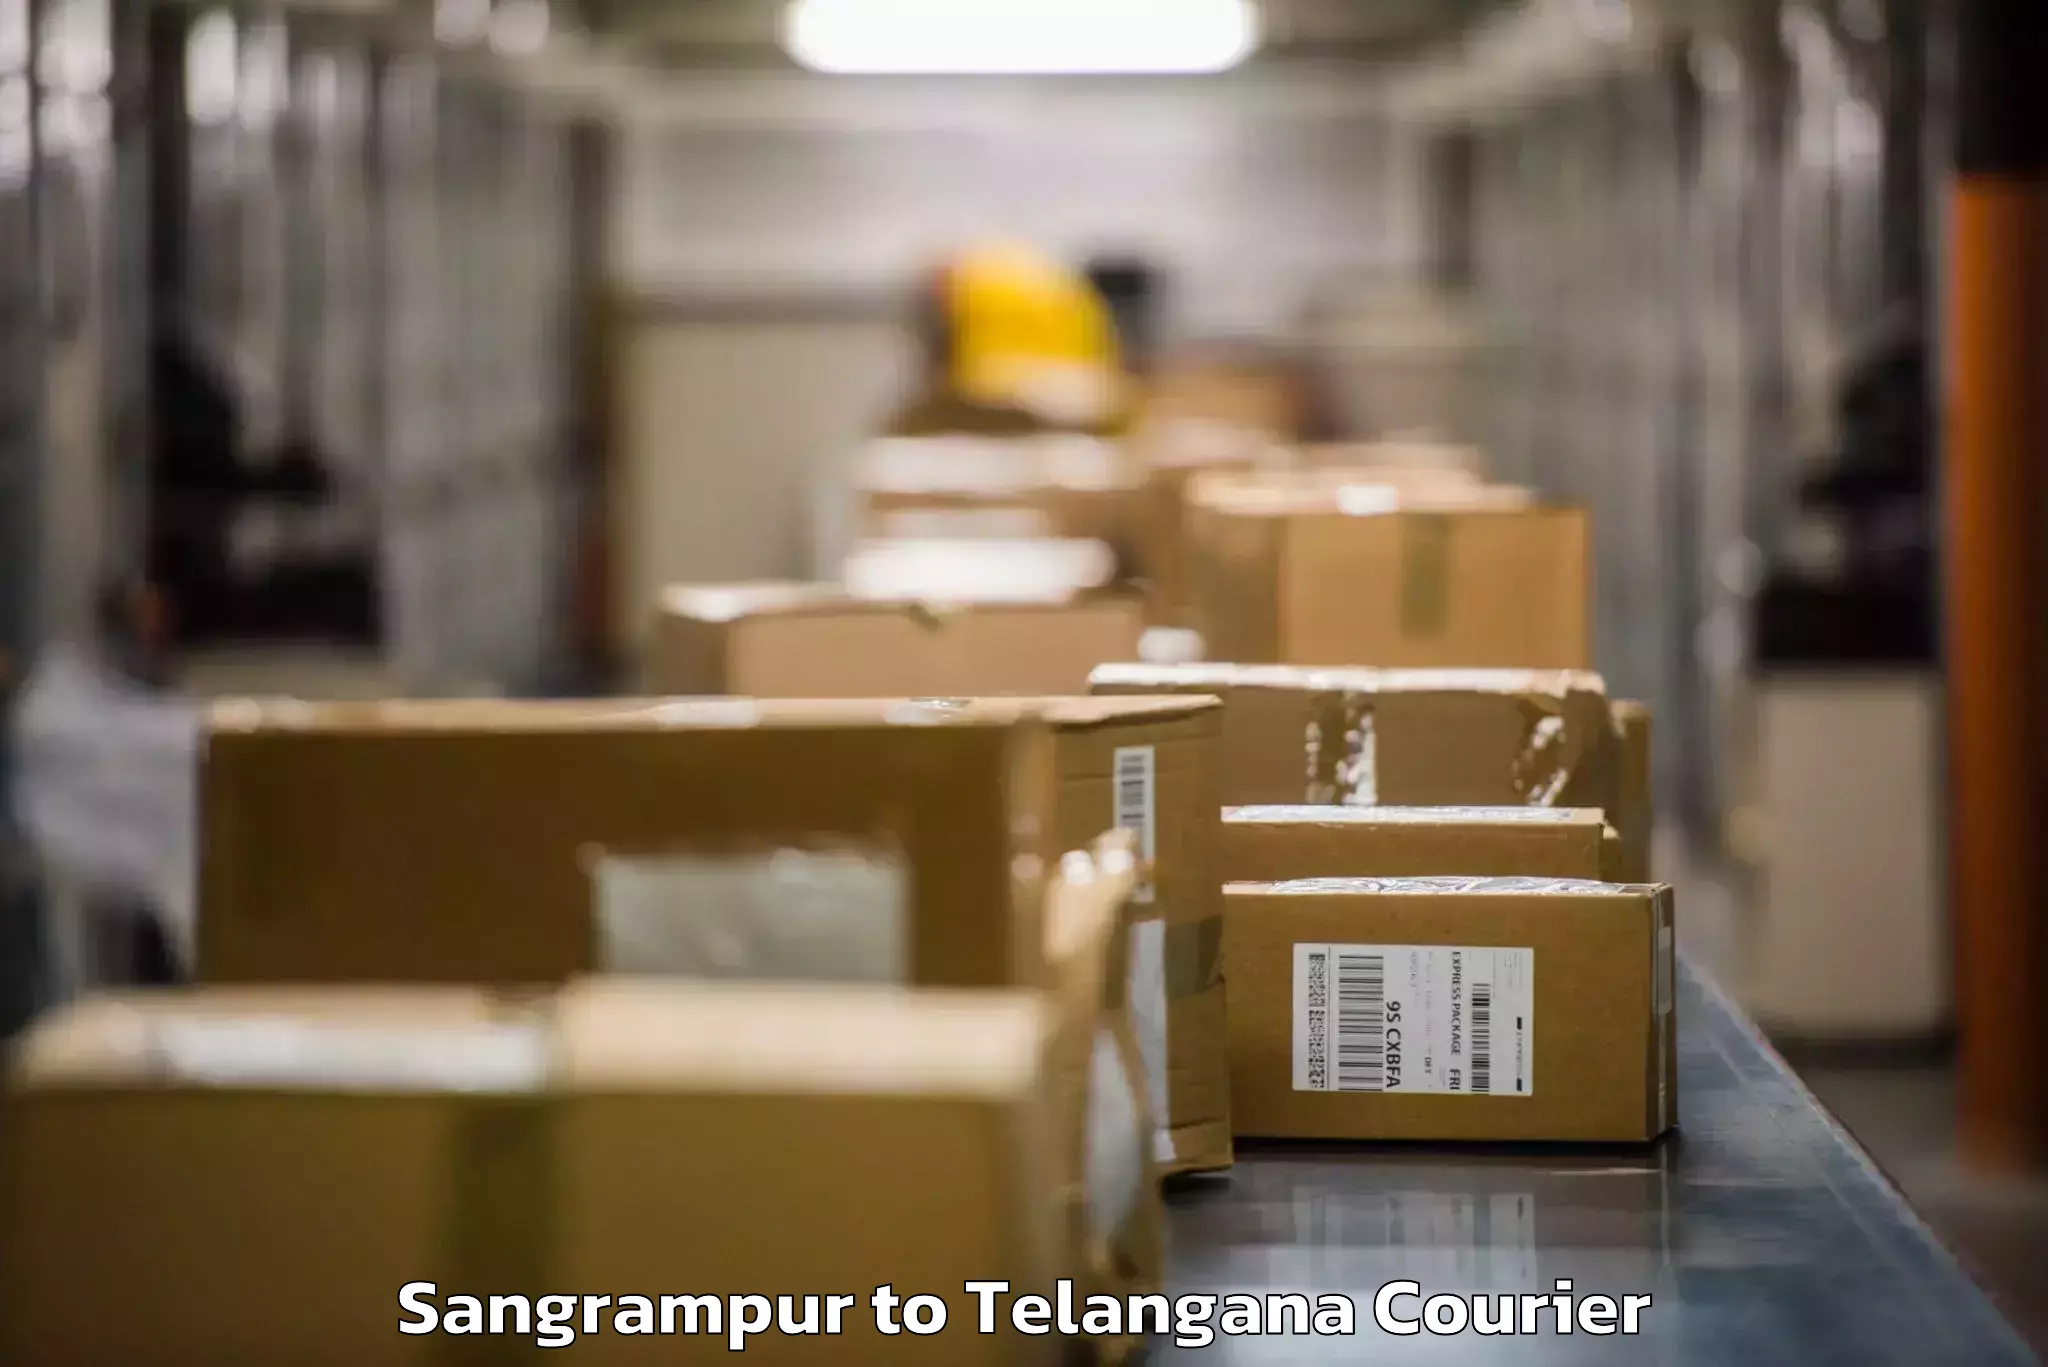 Baggage shipping experts Sangrampur to Gollapalli